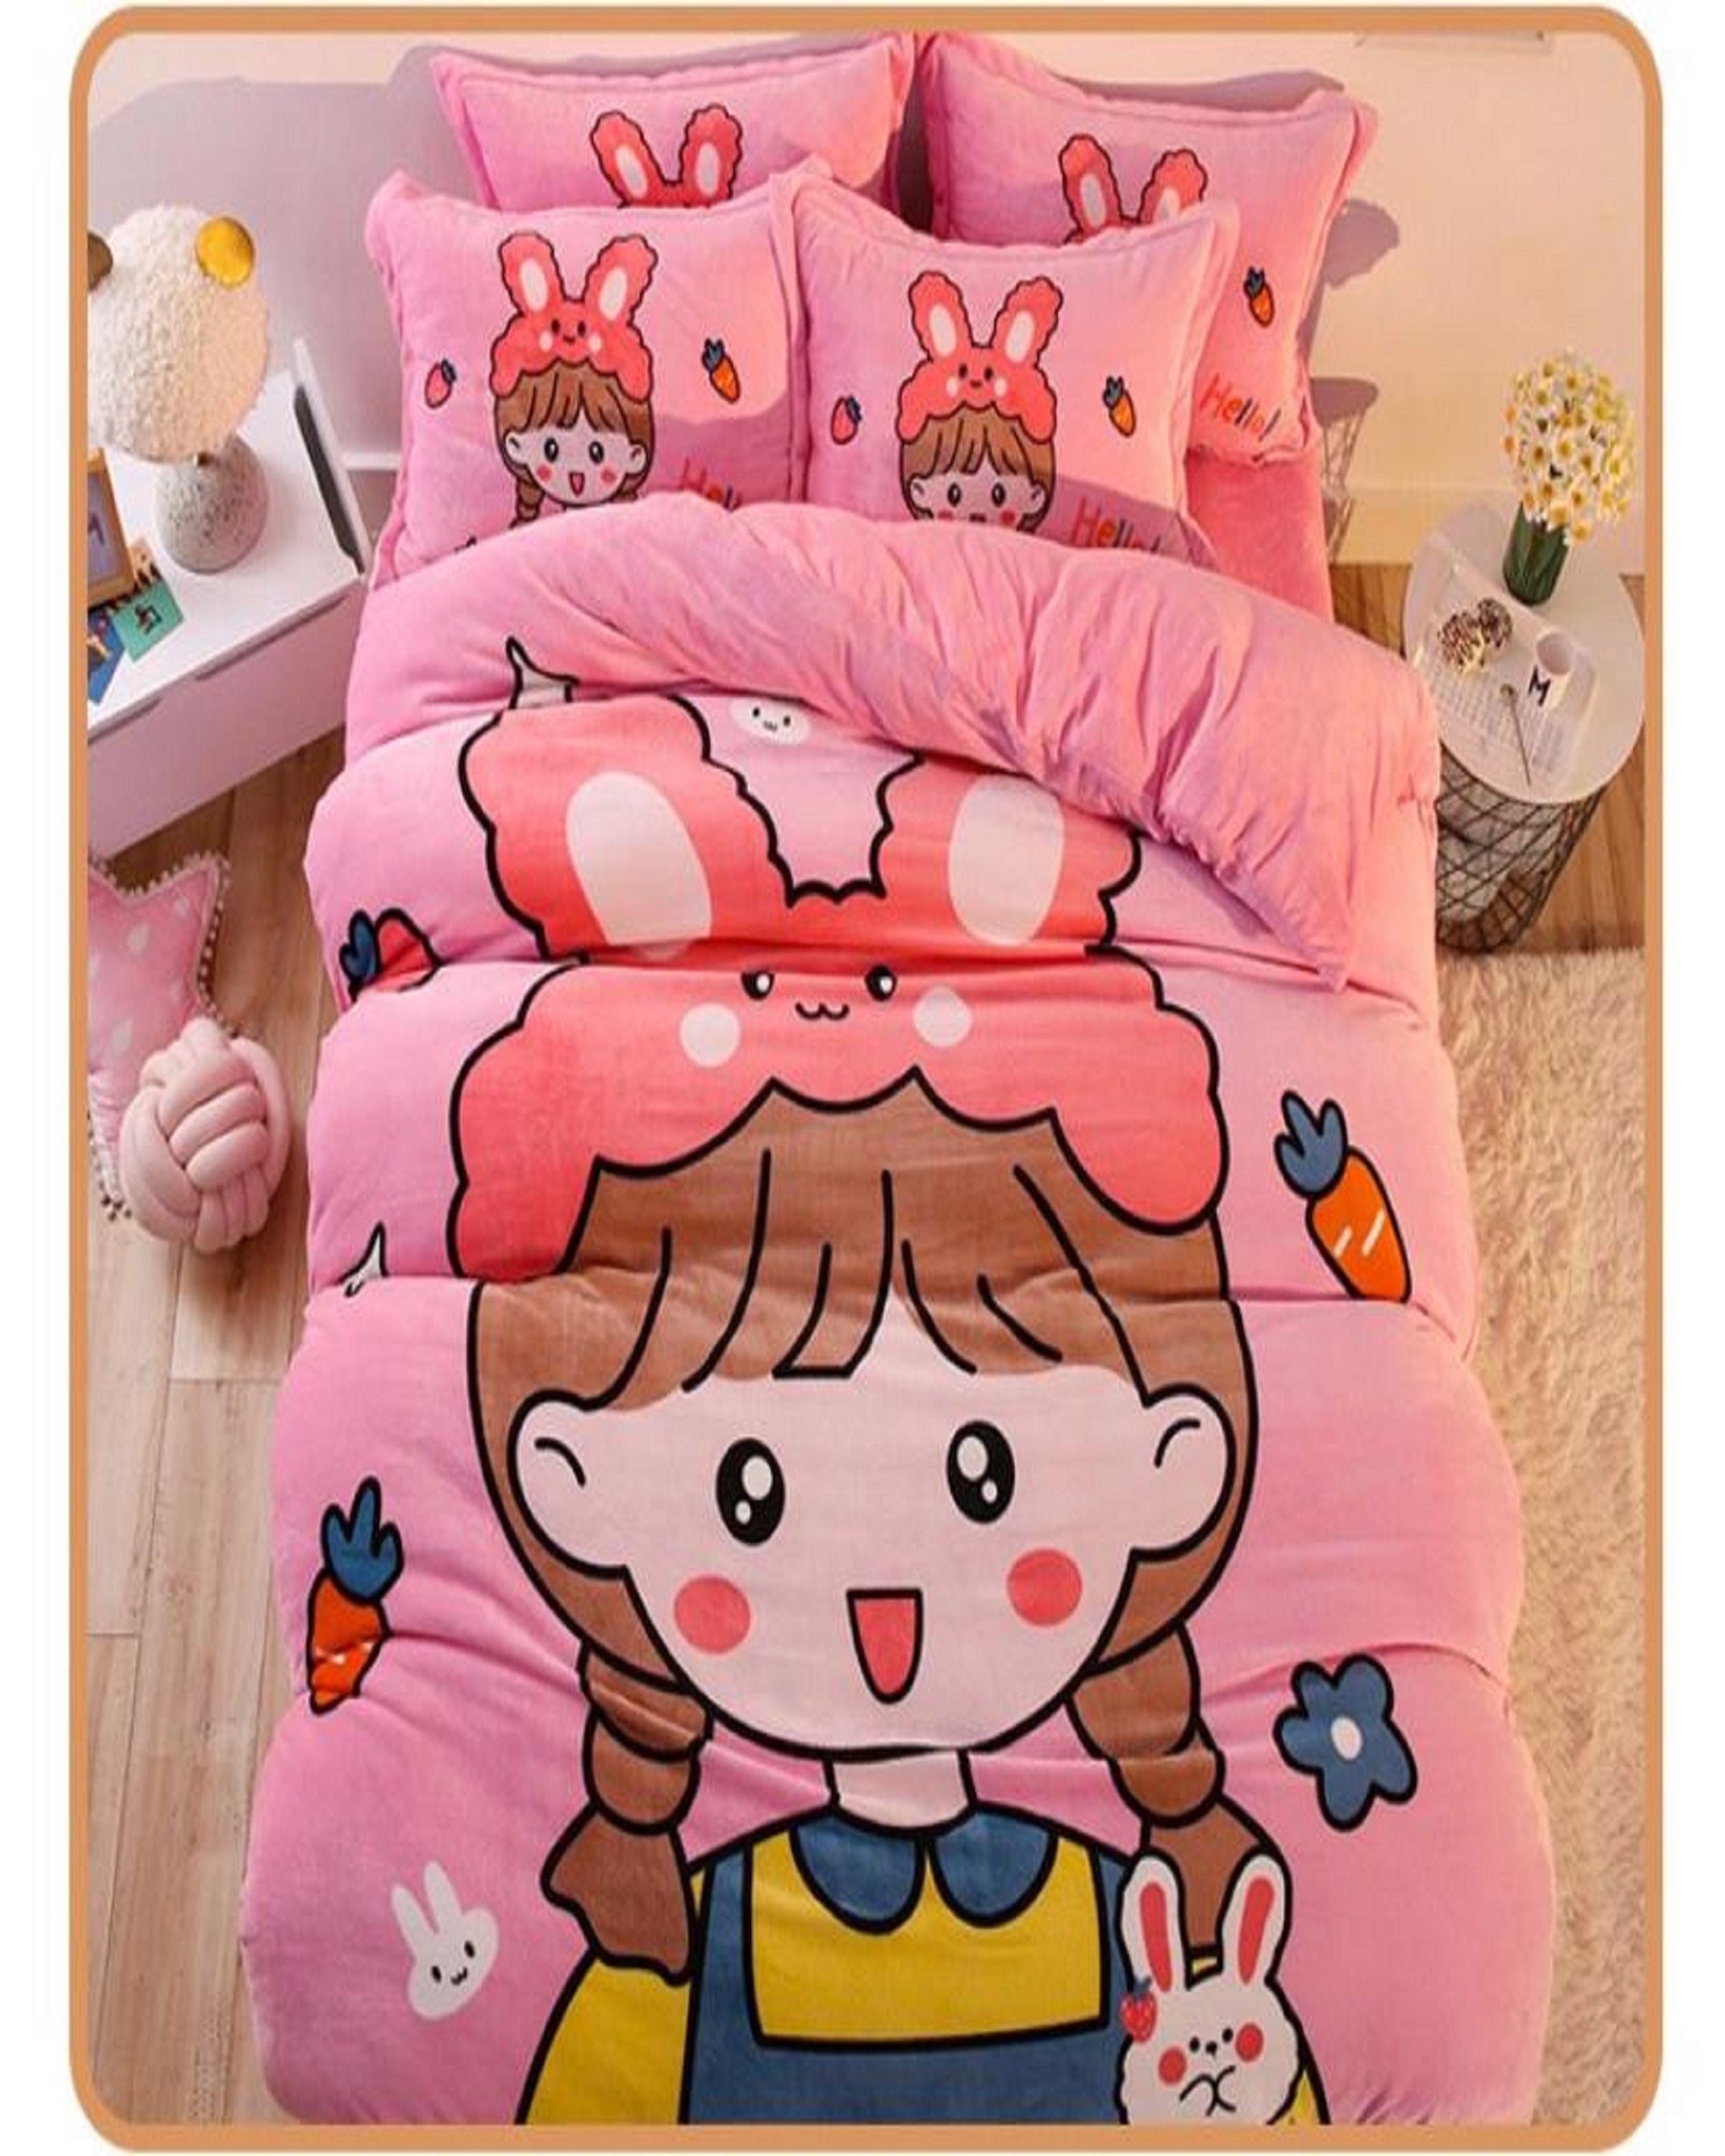 Pink Baby Bedding Set